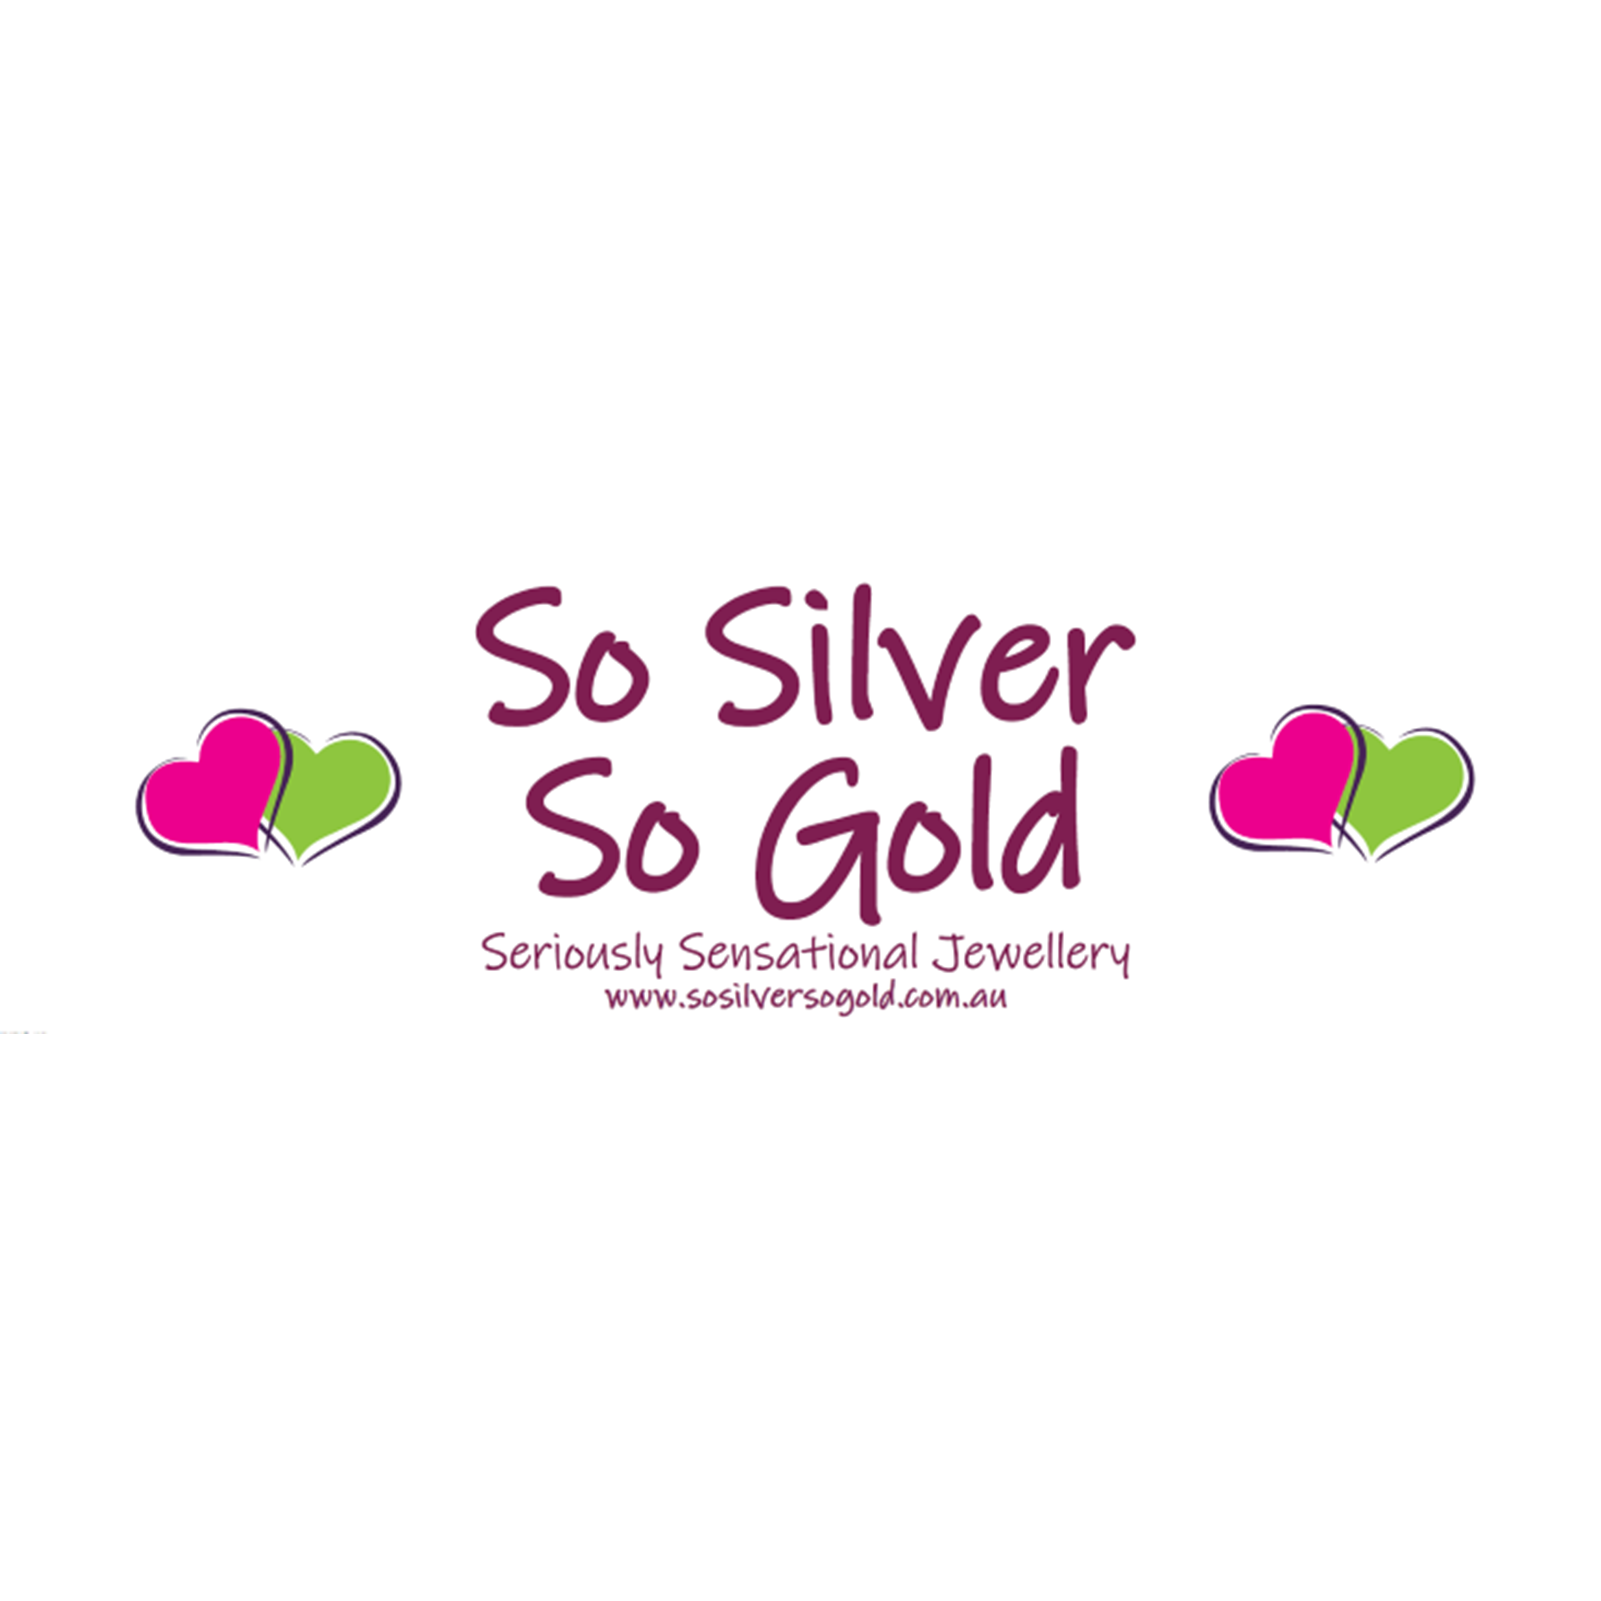 So Silver So Gold Devonport (03) 6423 2144